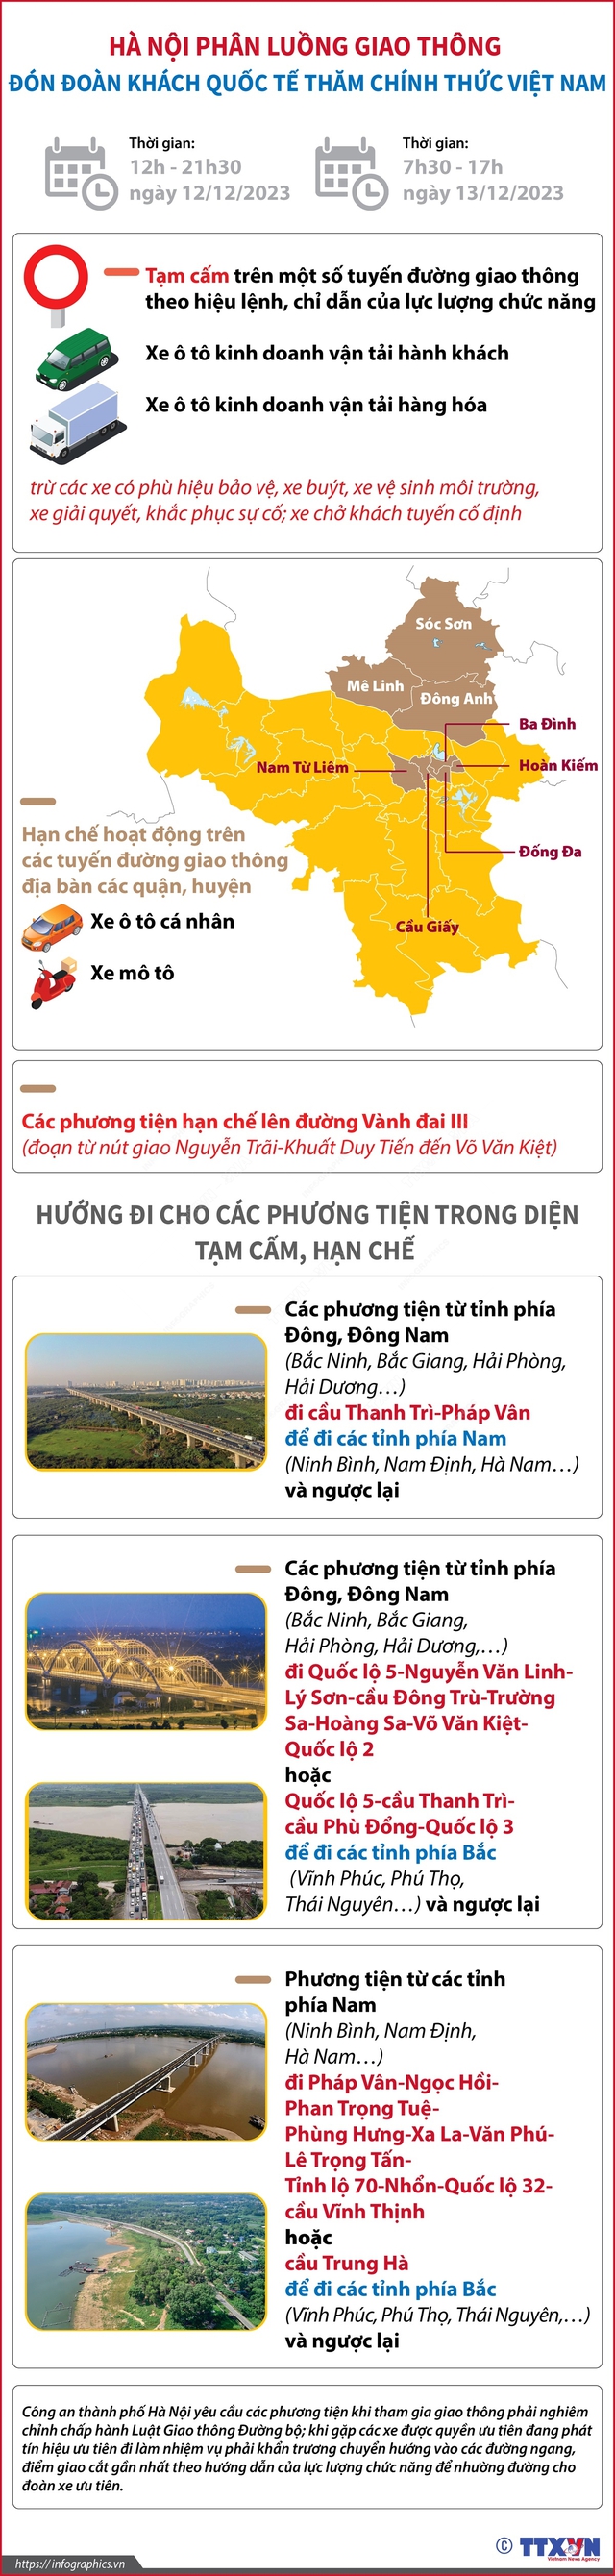 [Infographic] Hà Nội phân luồng giao thông đón đoàn khách quốc tế ngày 12-13/12 - Ảnh 1.